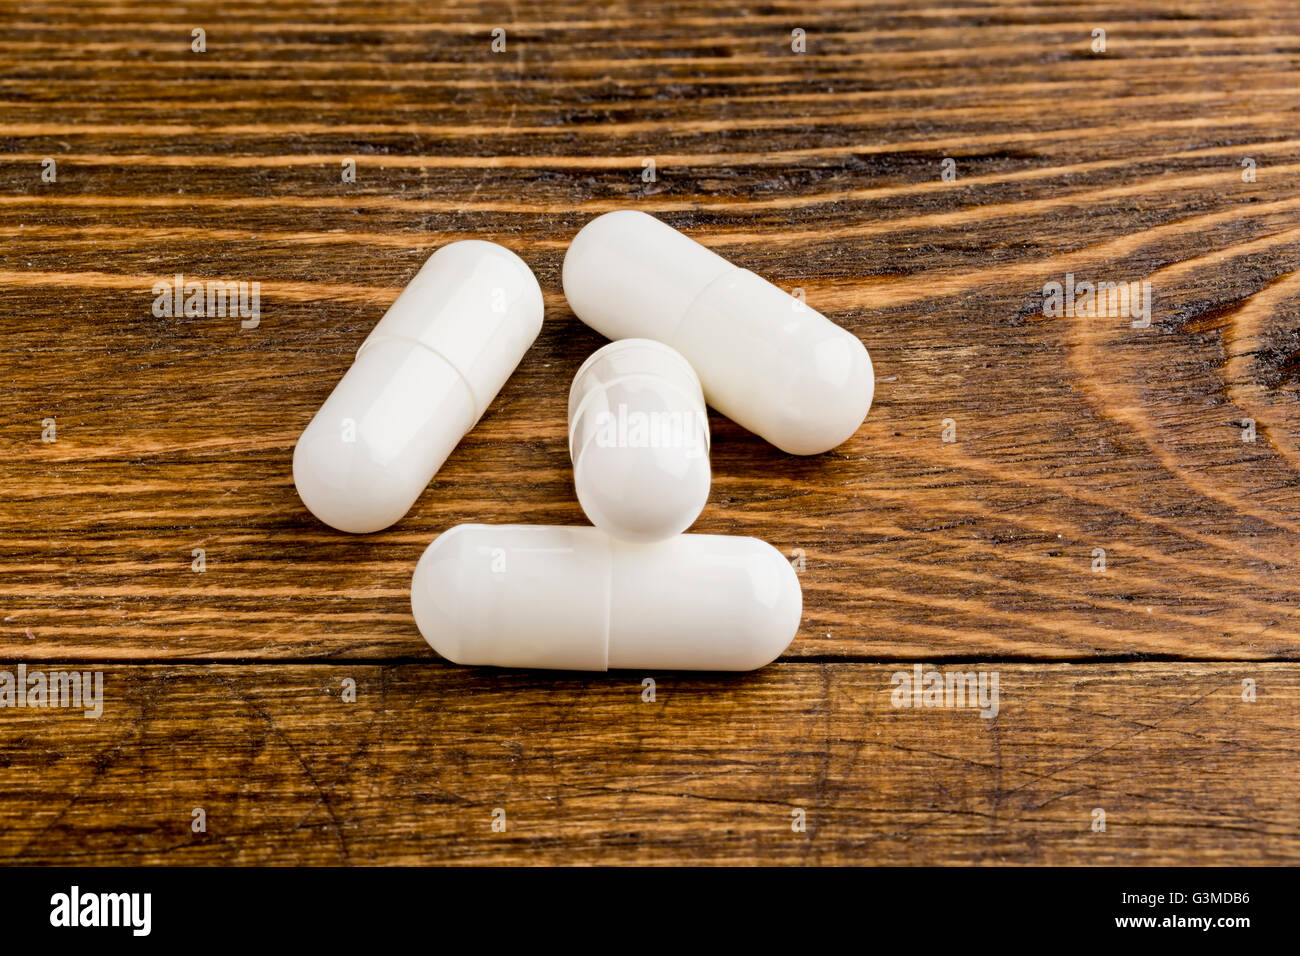 7 Increíbles # transformaciones de esteroides en pastillas nombress clave